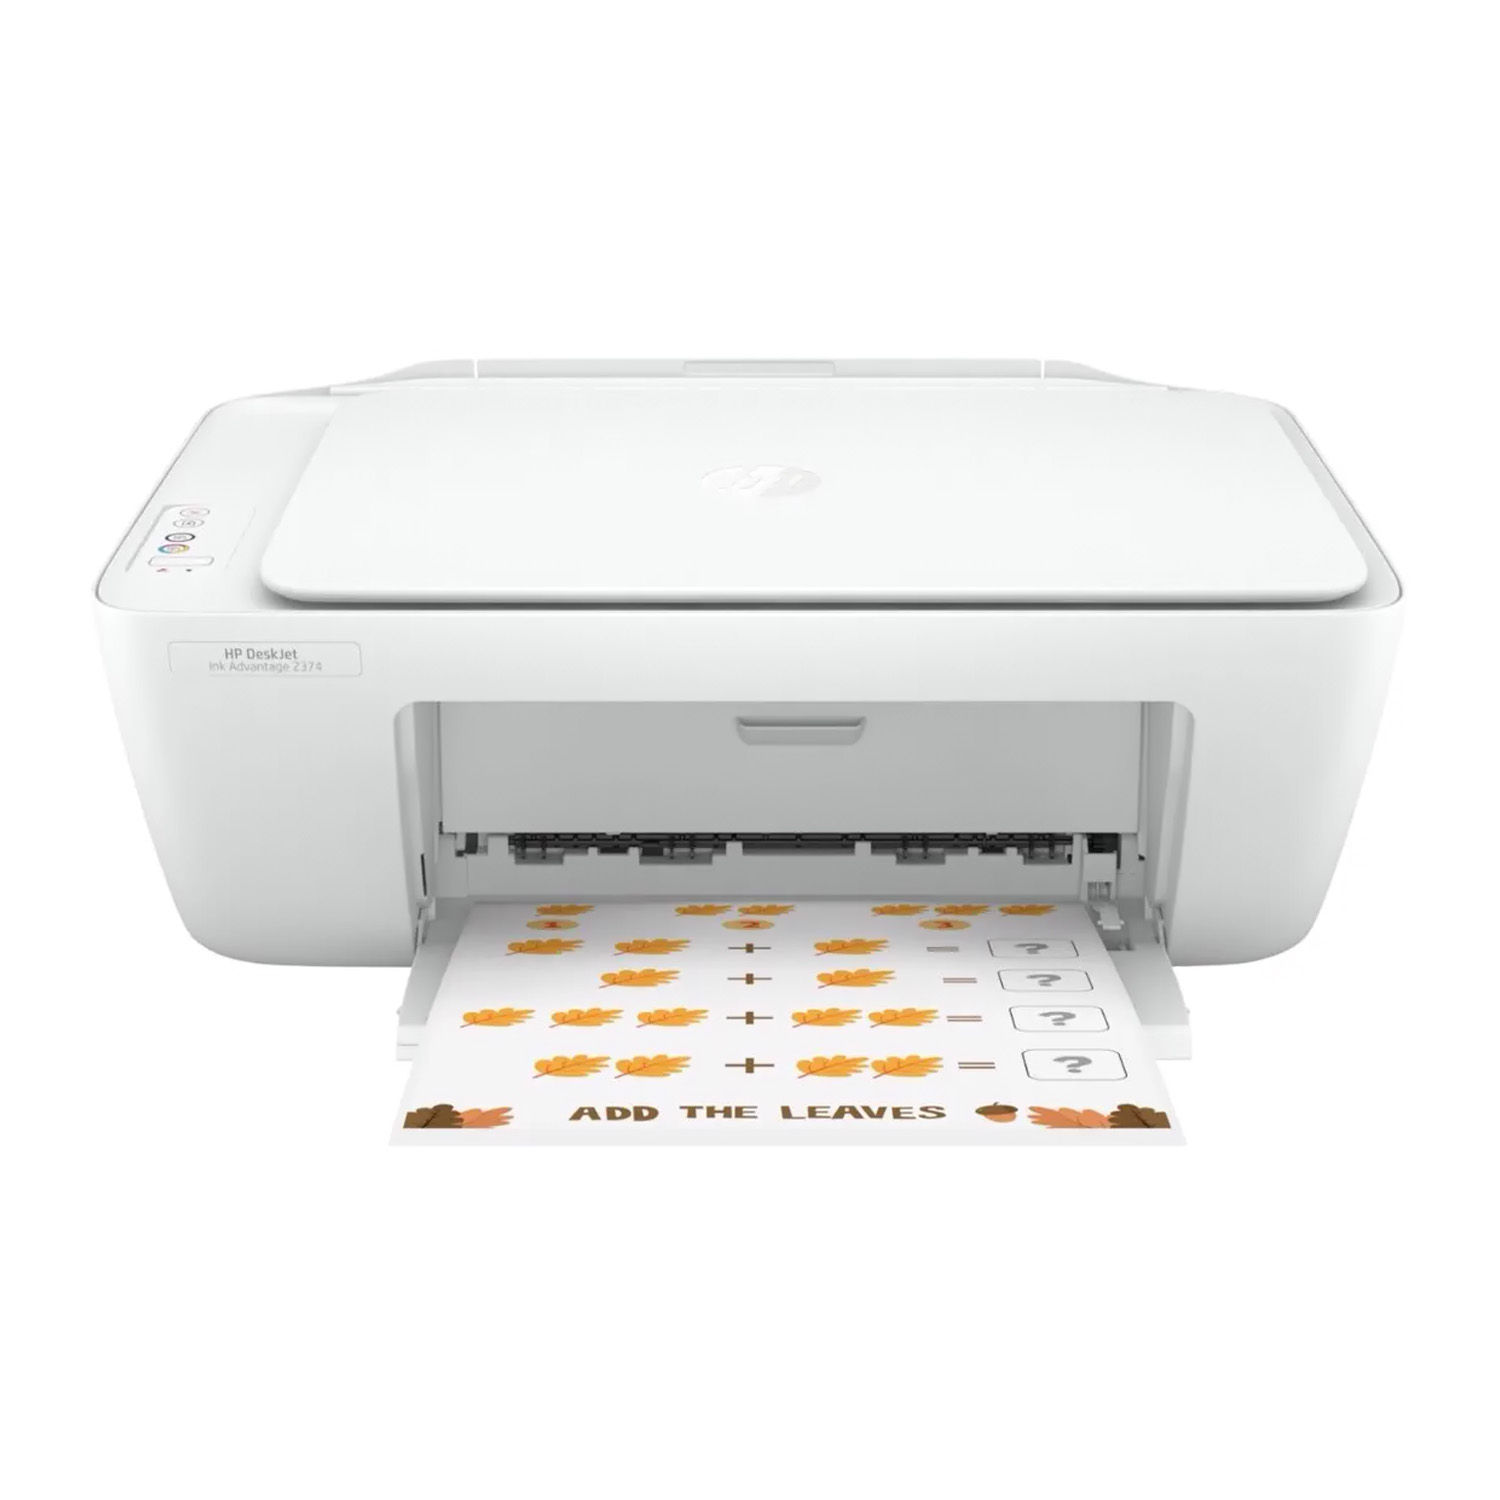 Impresora Multifuncional HP Deskjet 2374 inyección de tinta +Audifonos